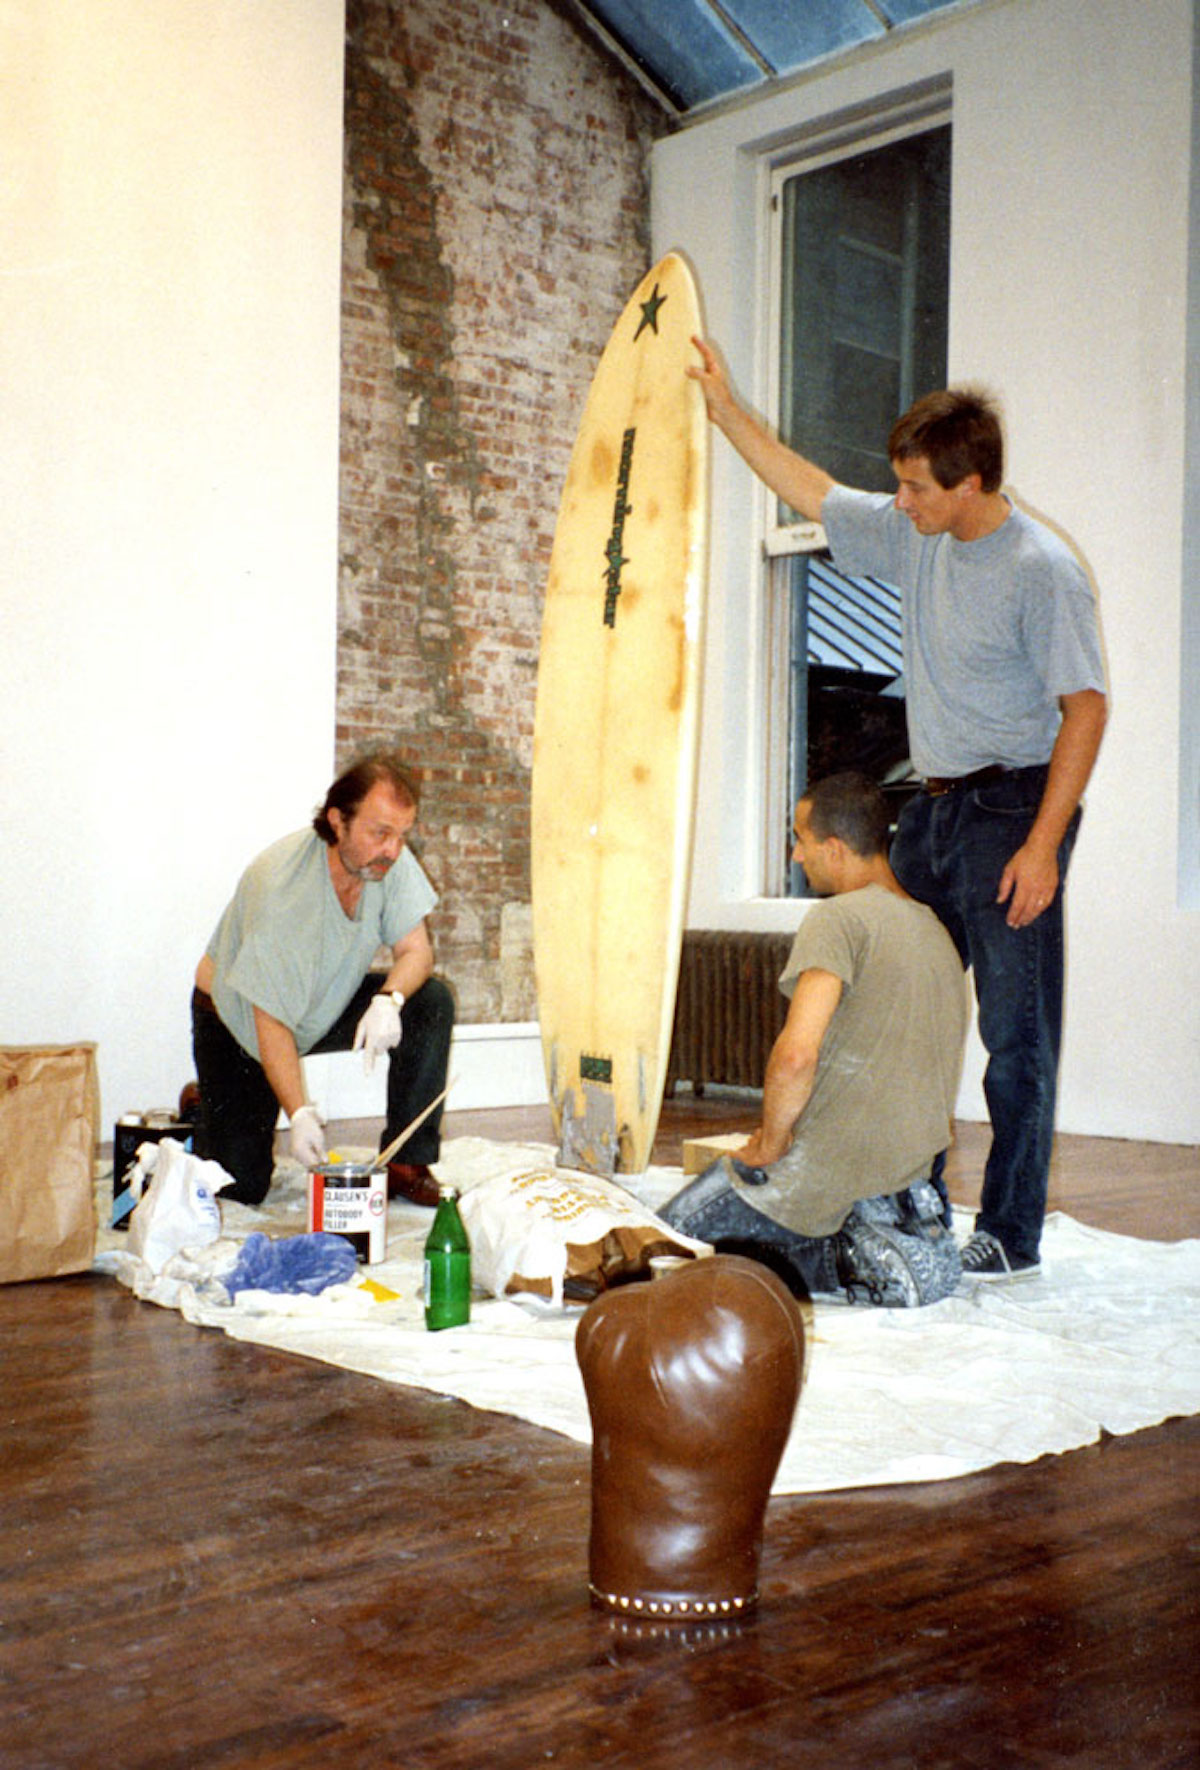  1994 год, скульптор Франц Вест (слева) за работой над композицией «Лимерик» для моновыставки «Франц Вест: Элементы дома (ретроспектива)». Это была первая выставка скульптора в галерее Дэвида Двирнера (стоит справа) в Нью-Йорке на Грин-Стрит, 43 